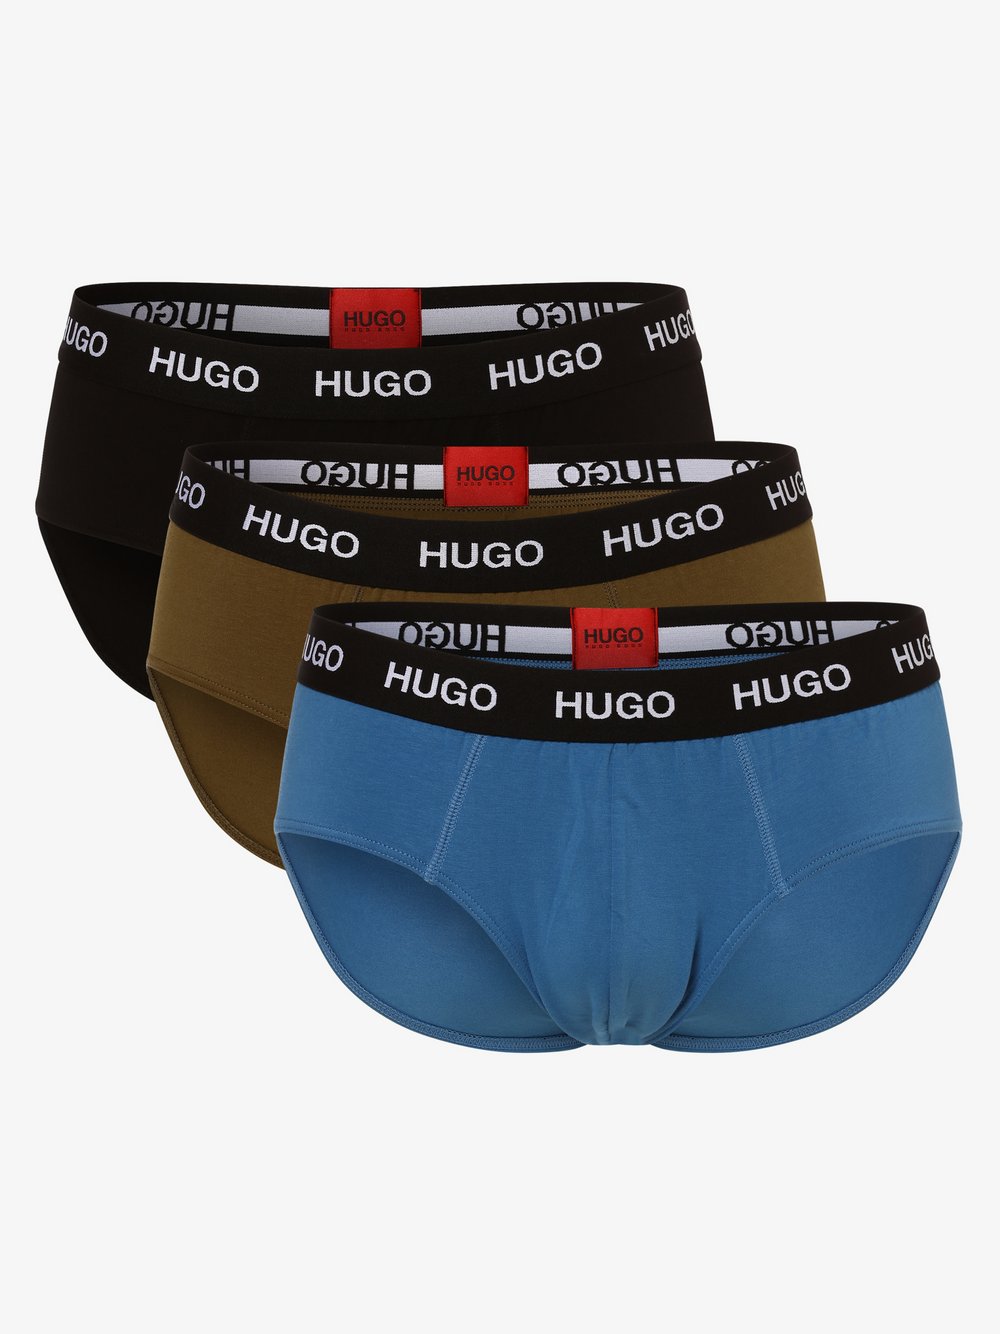 HUGO - Slipy męskie pakowane po 3 szt., zielony